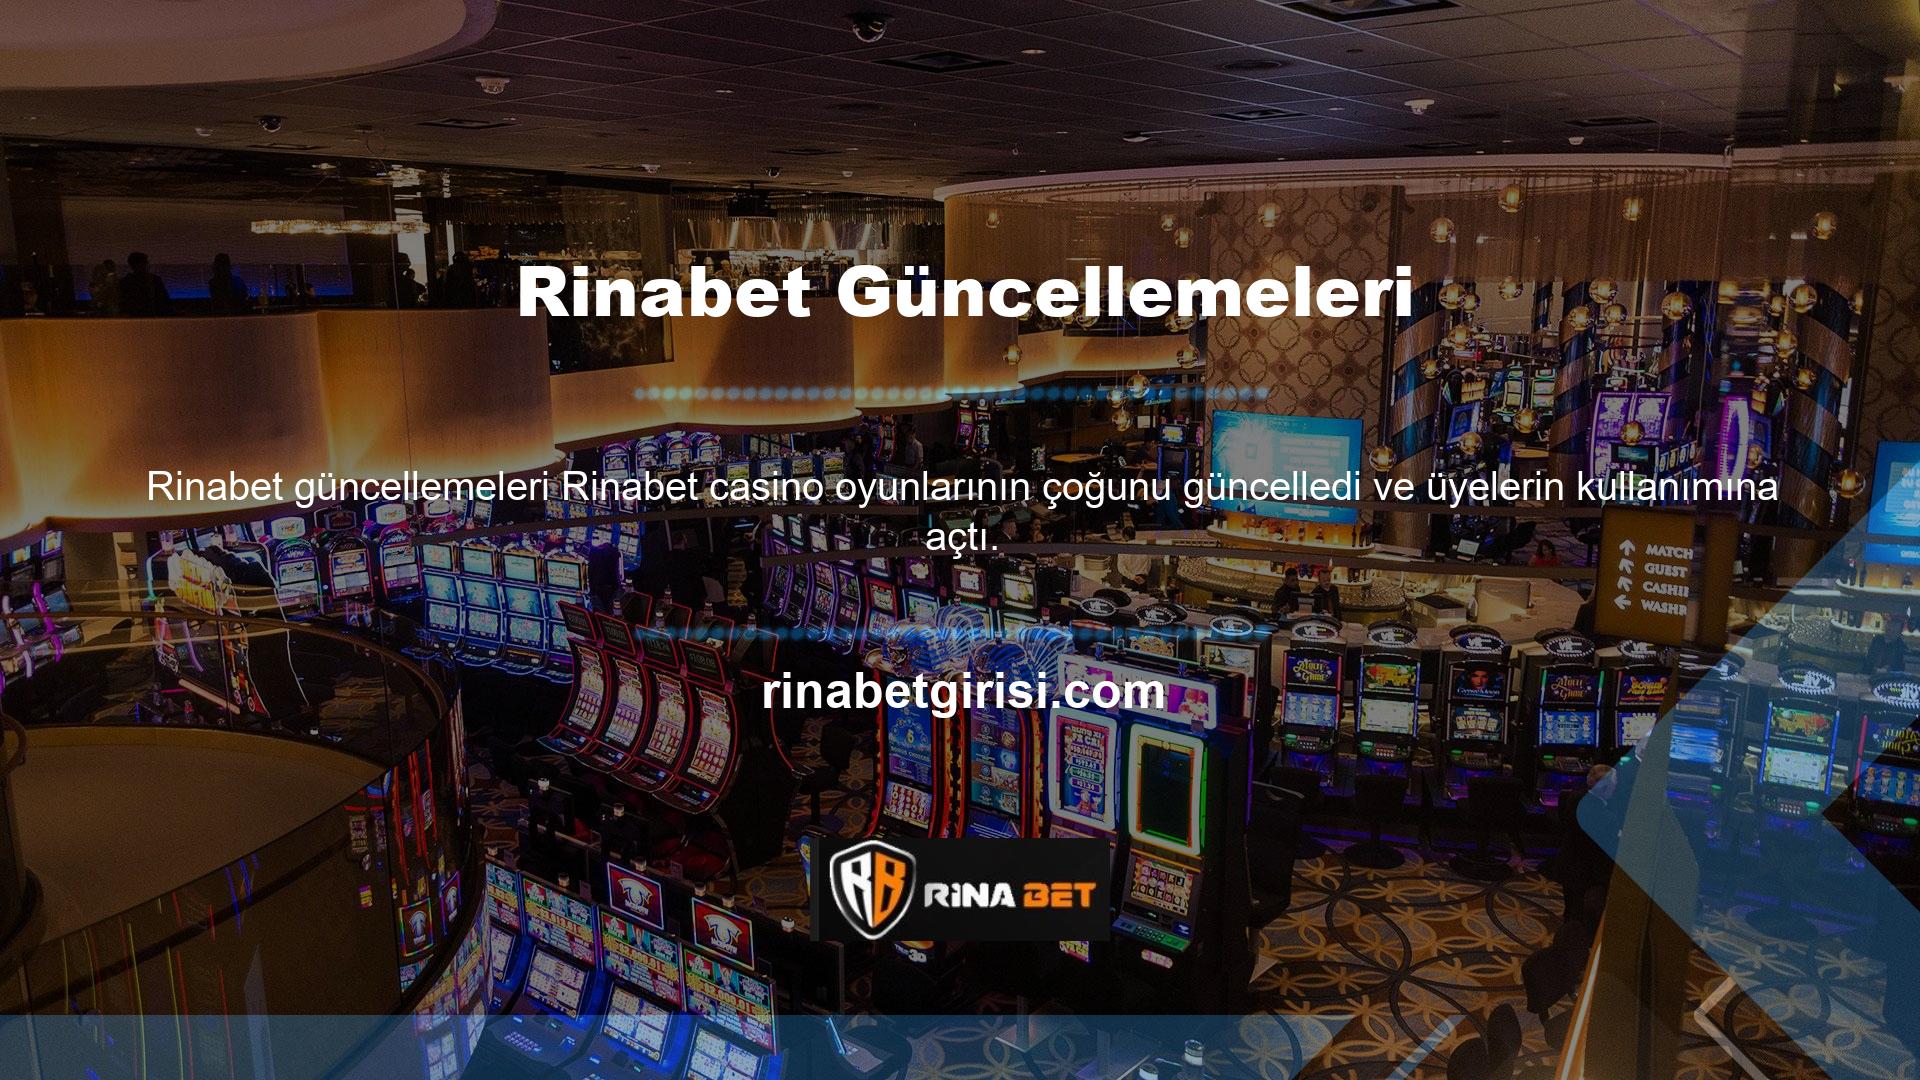 Sitemizde üyelerimize farklı kategorilerde farklı casino oyunları oynama imkanı sunuyoruz